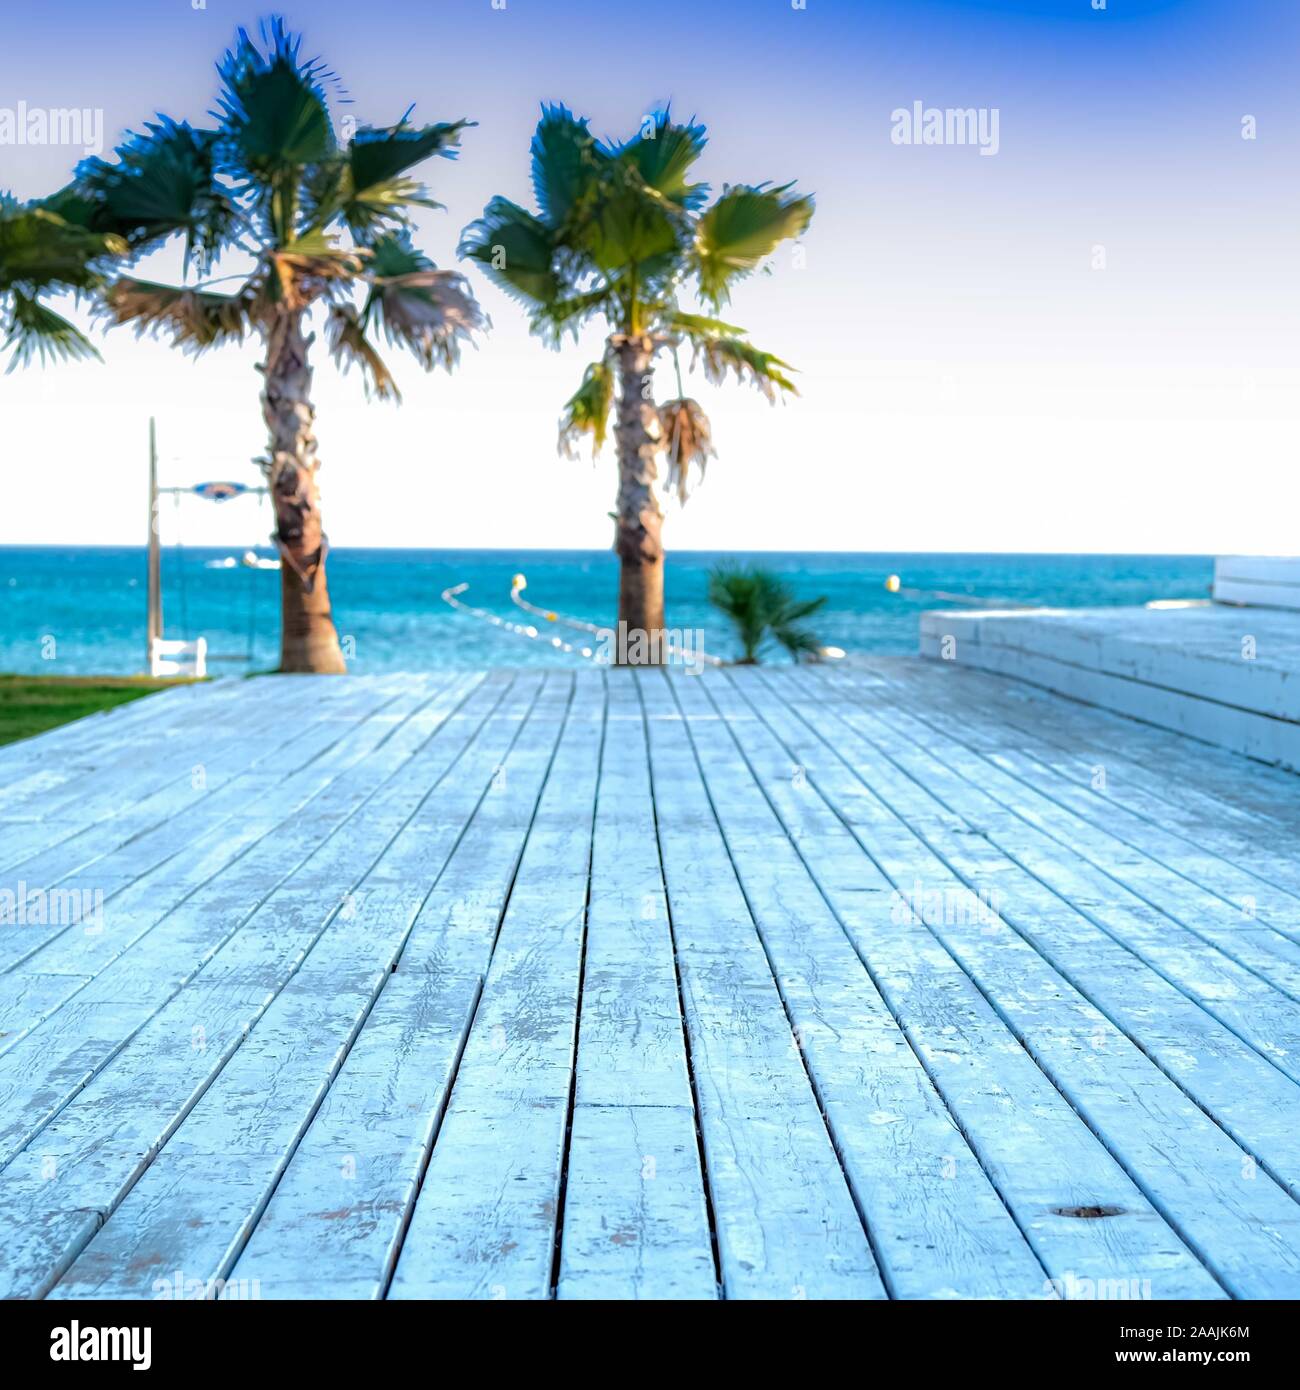 Pizarras blancas de playa cubierta va a horison con palmeras y el azul del  cielo y del mar. Verano natural mar de fondo. Concepto de vacaciones  Fotografía de stock - Alamy